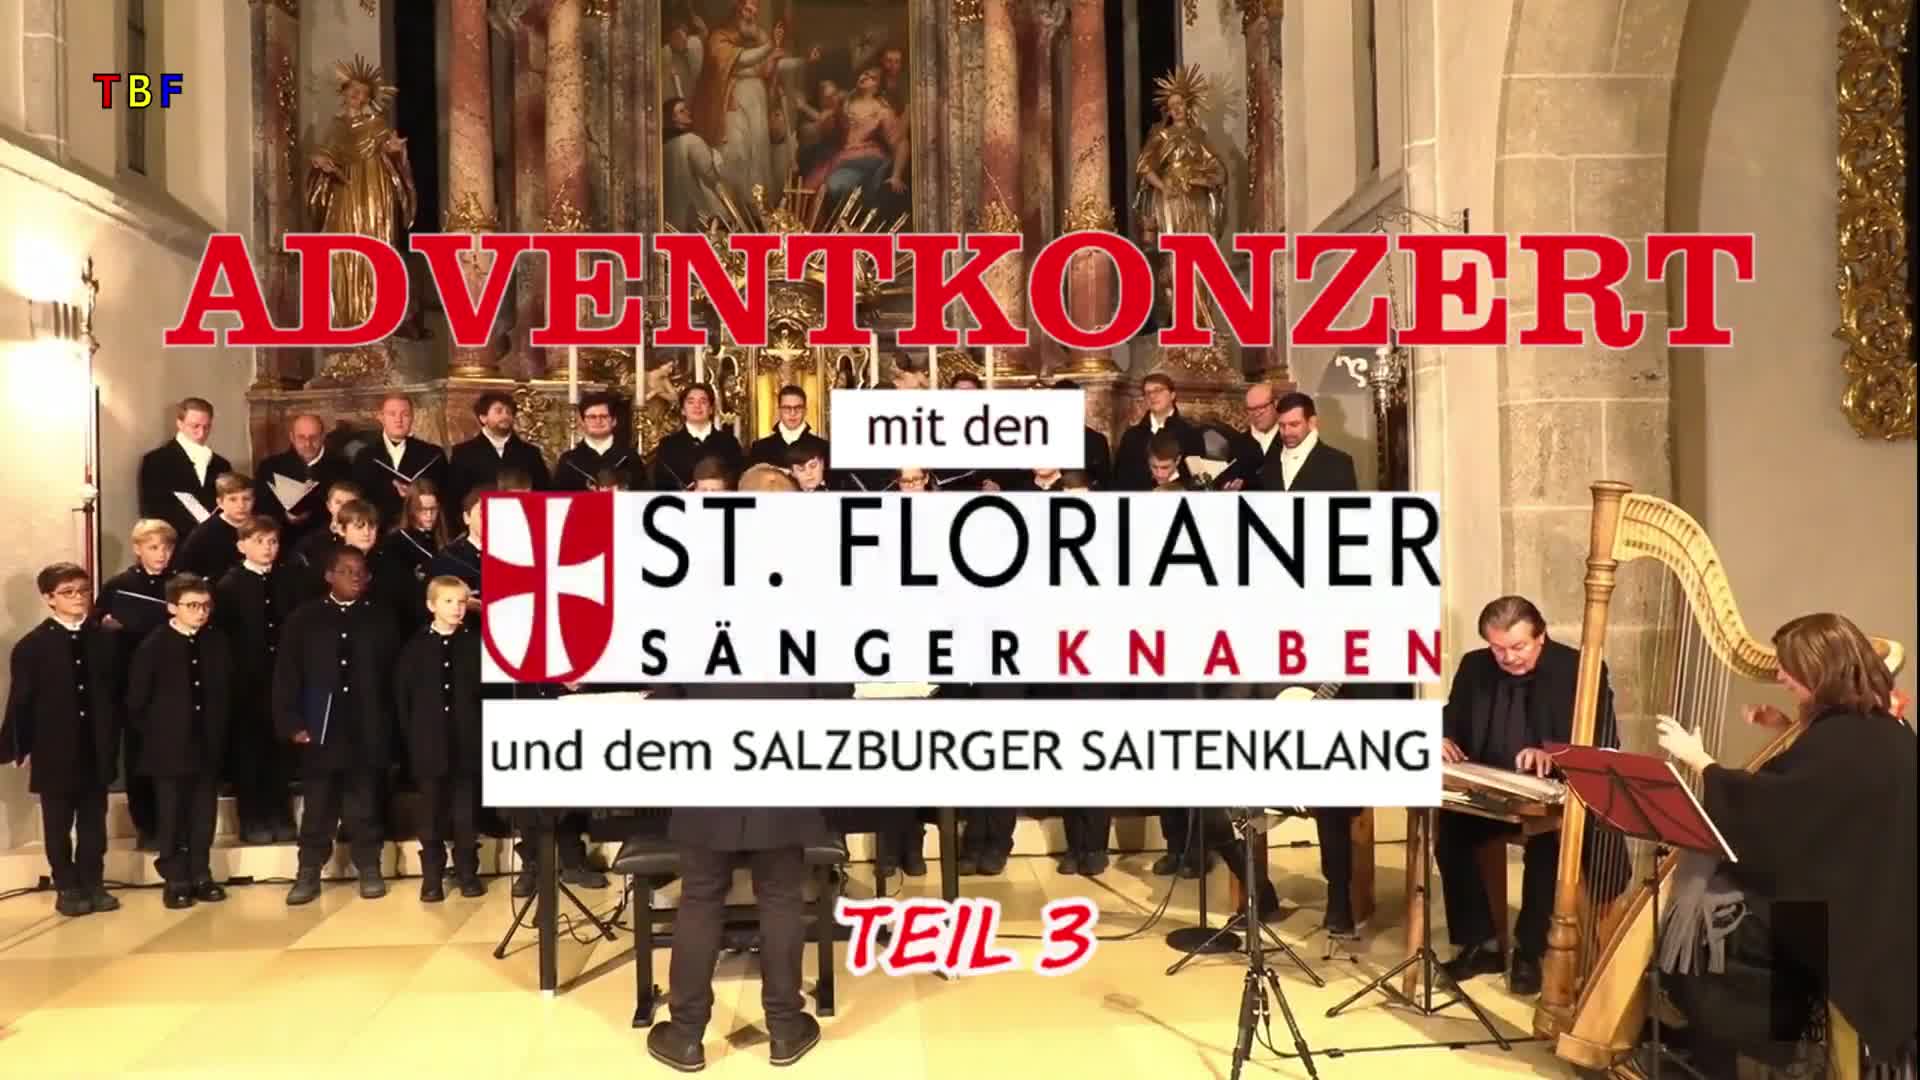 Adventkonzert mit den St. Florianer Sängerknaben, Teil 3